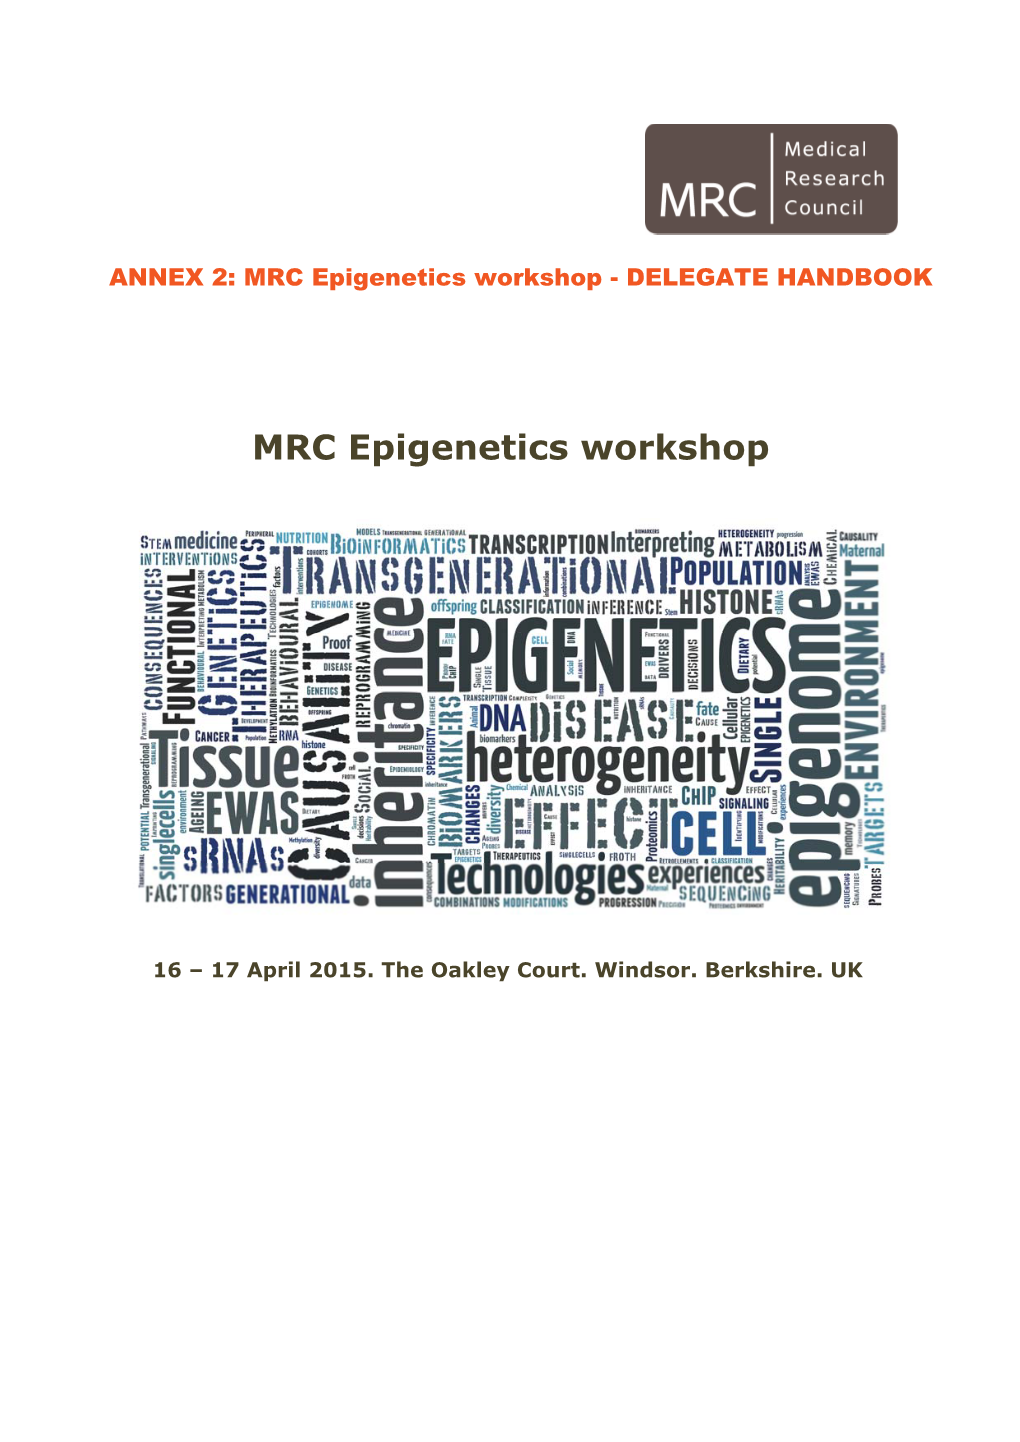 Epigenetics Workshop Handbook